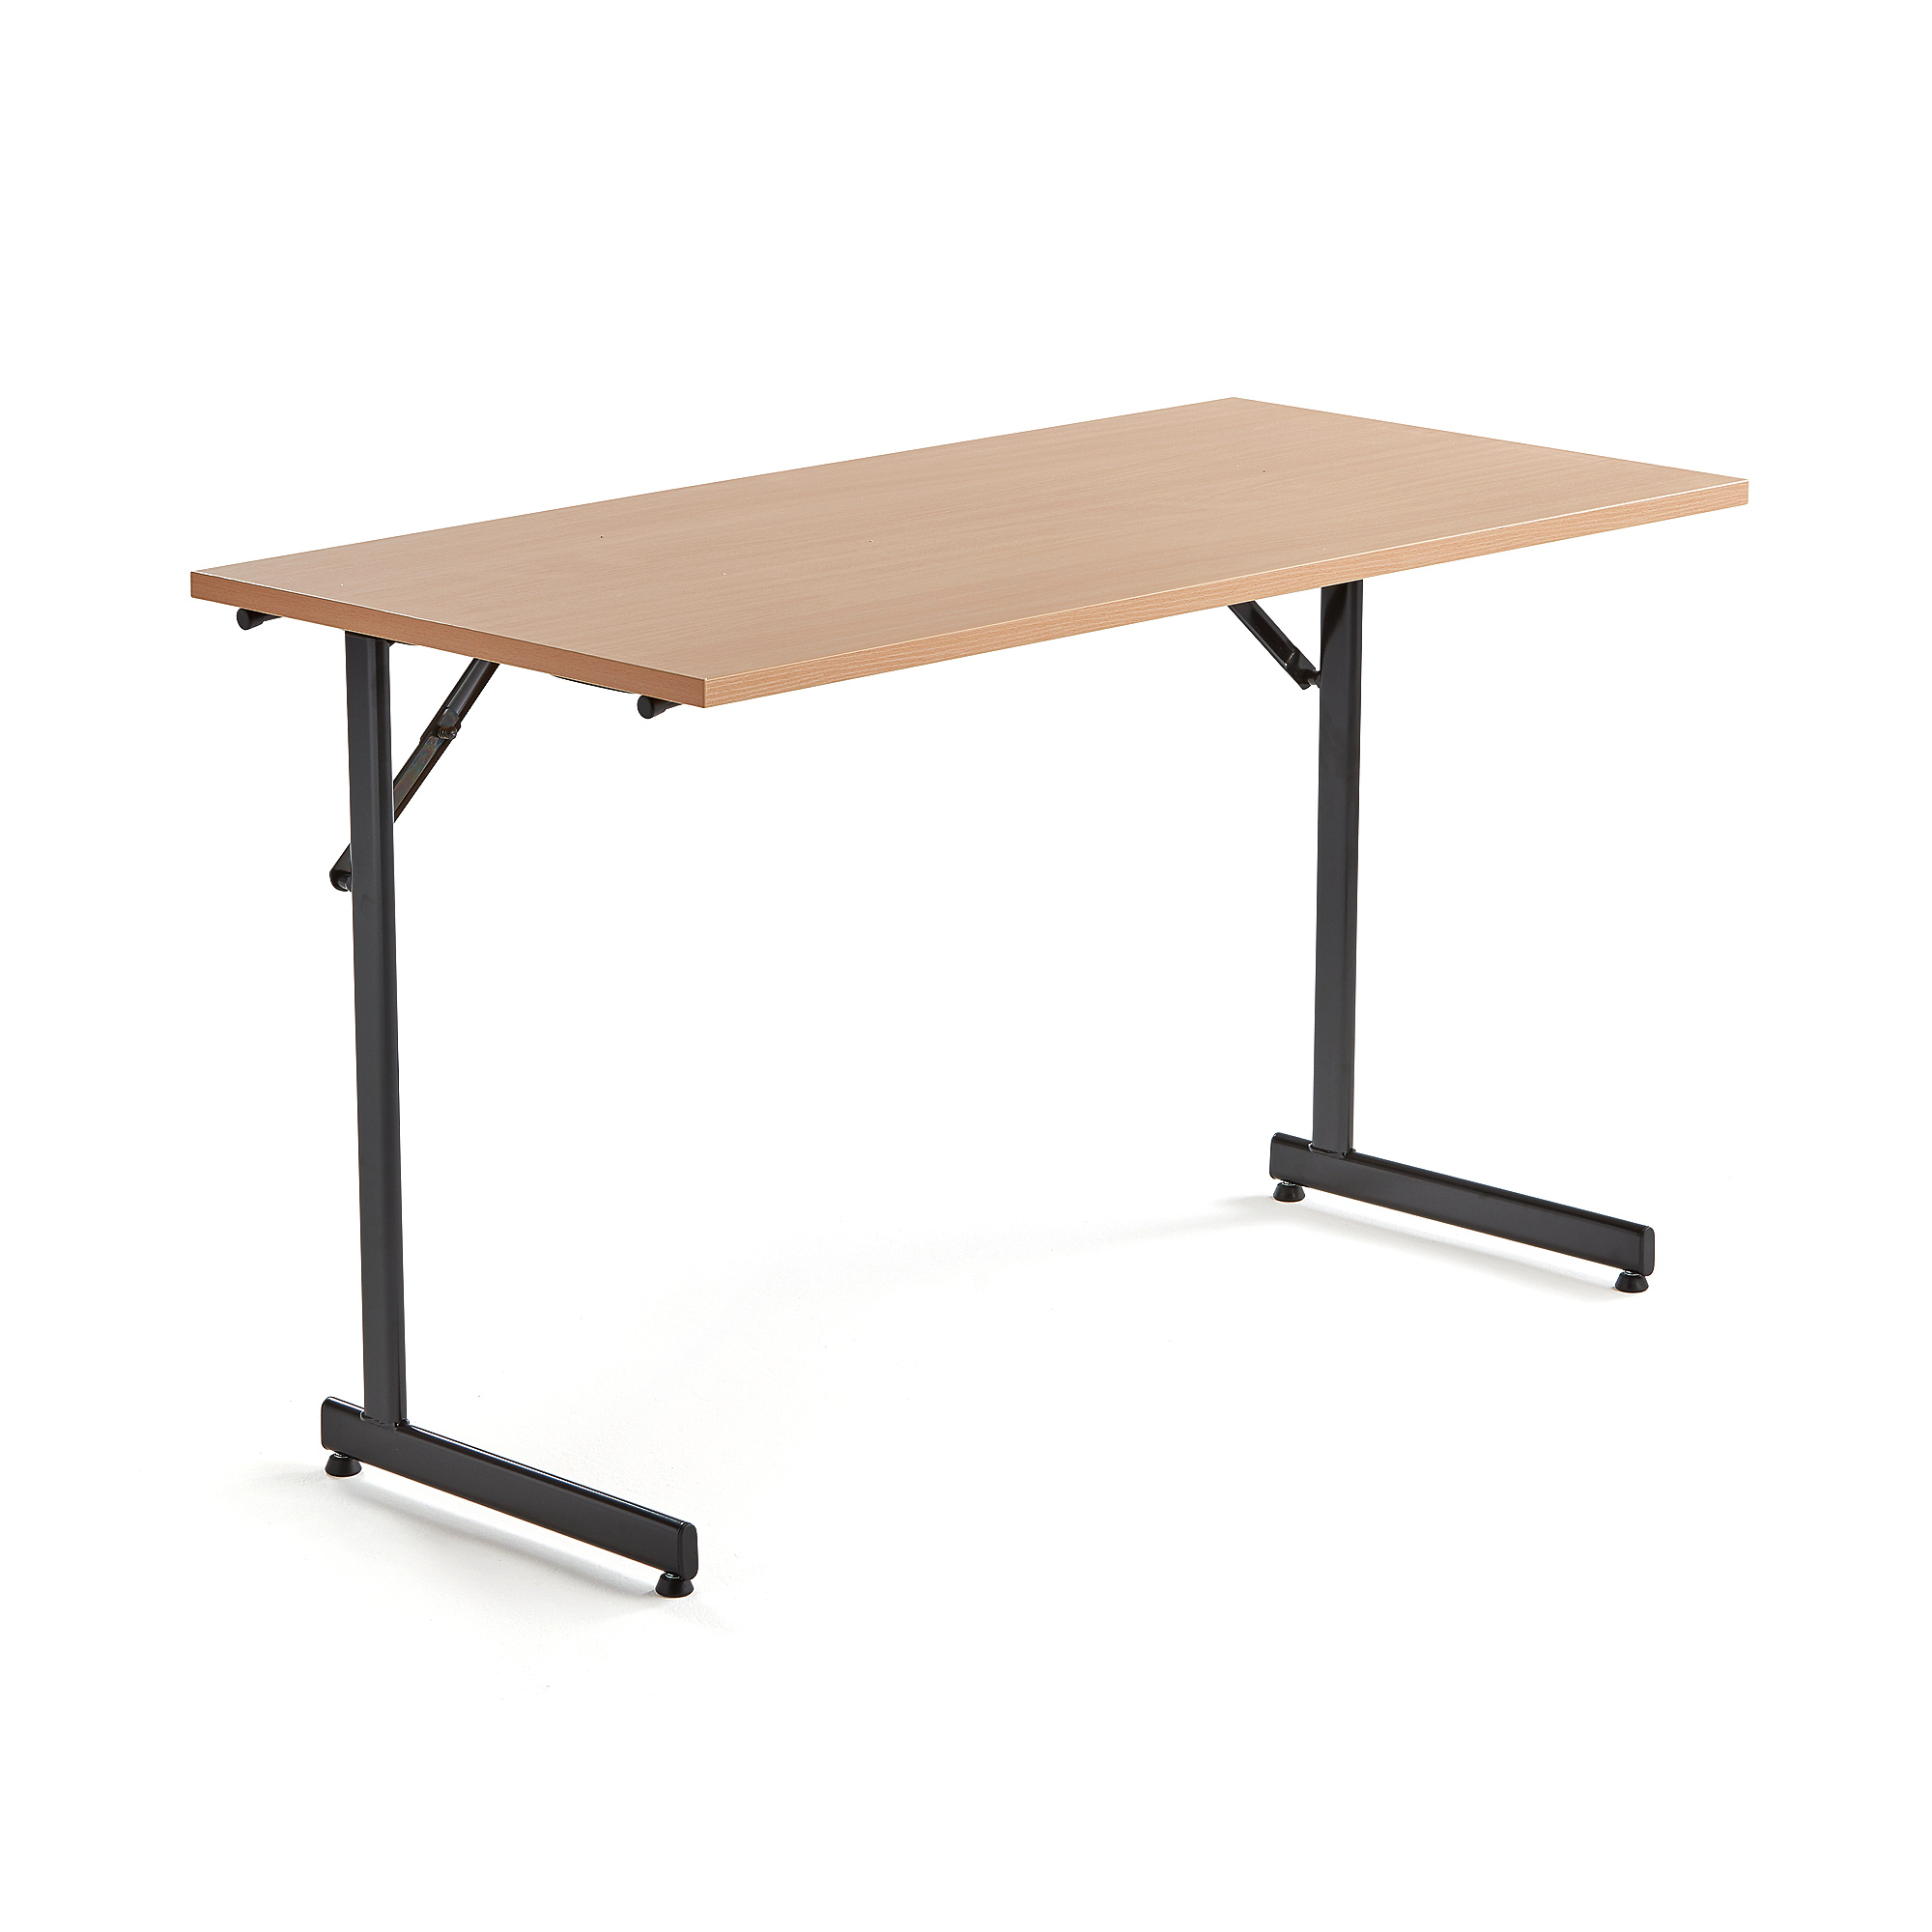 Rokovací stôl Claire, 1200x600 mm, bukový laminát/čierna